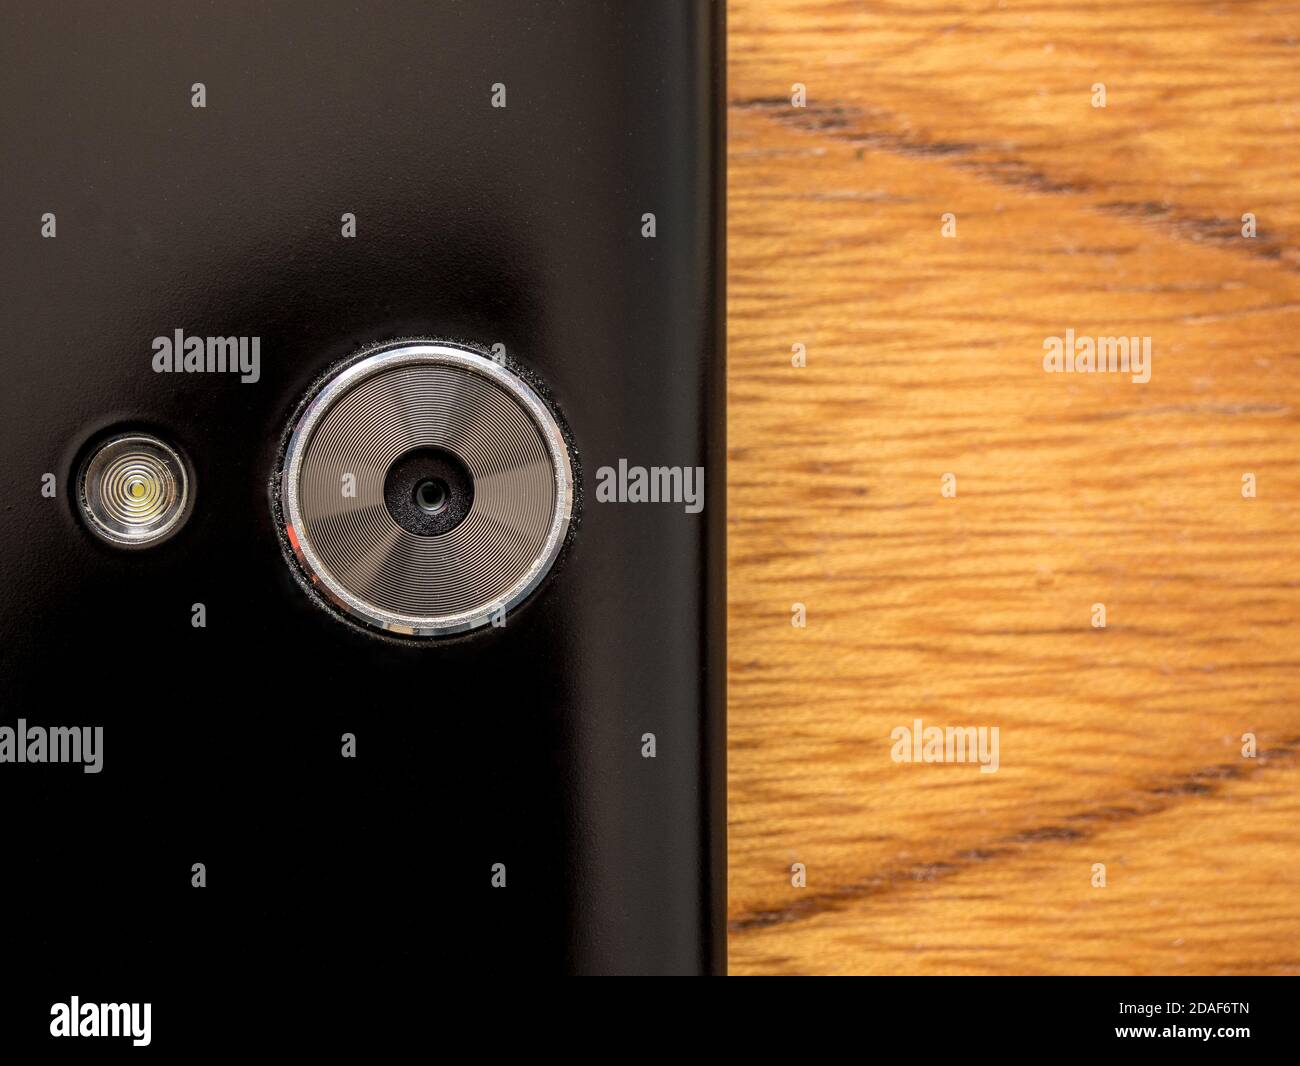 Primo piano di una fotocamera per smartphone con flash luminoso. Sul lato destro della foto sfondo vuoto con sfondo in legno. Foto Stock